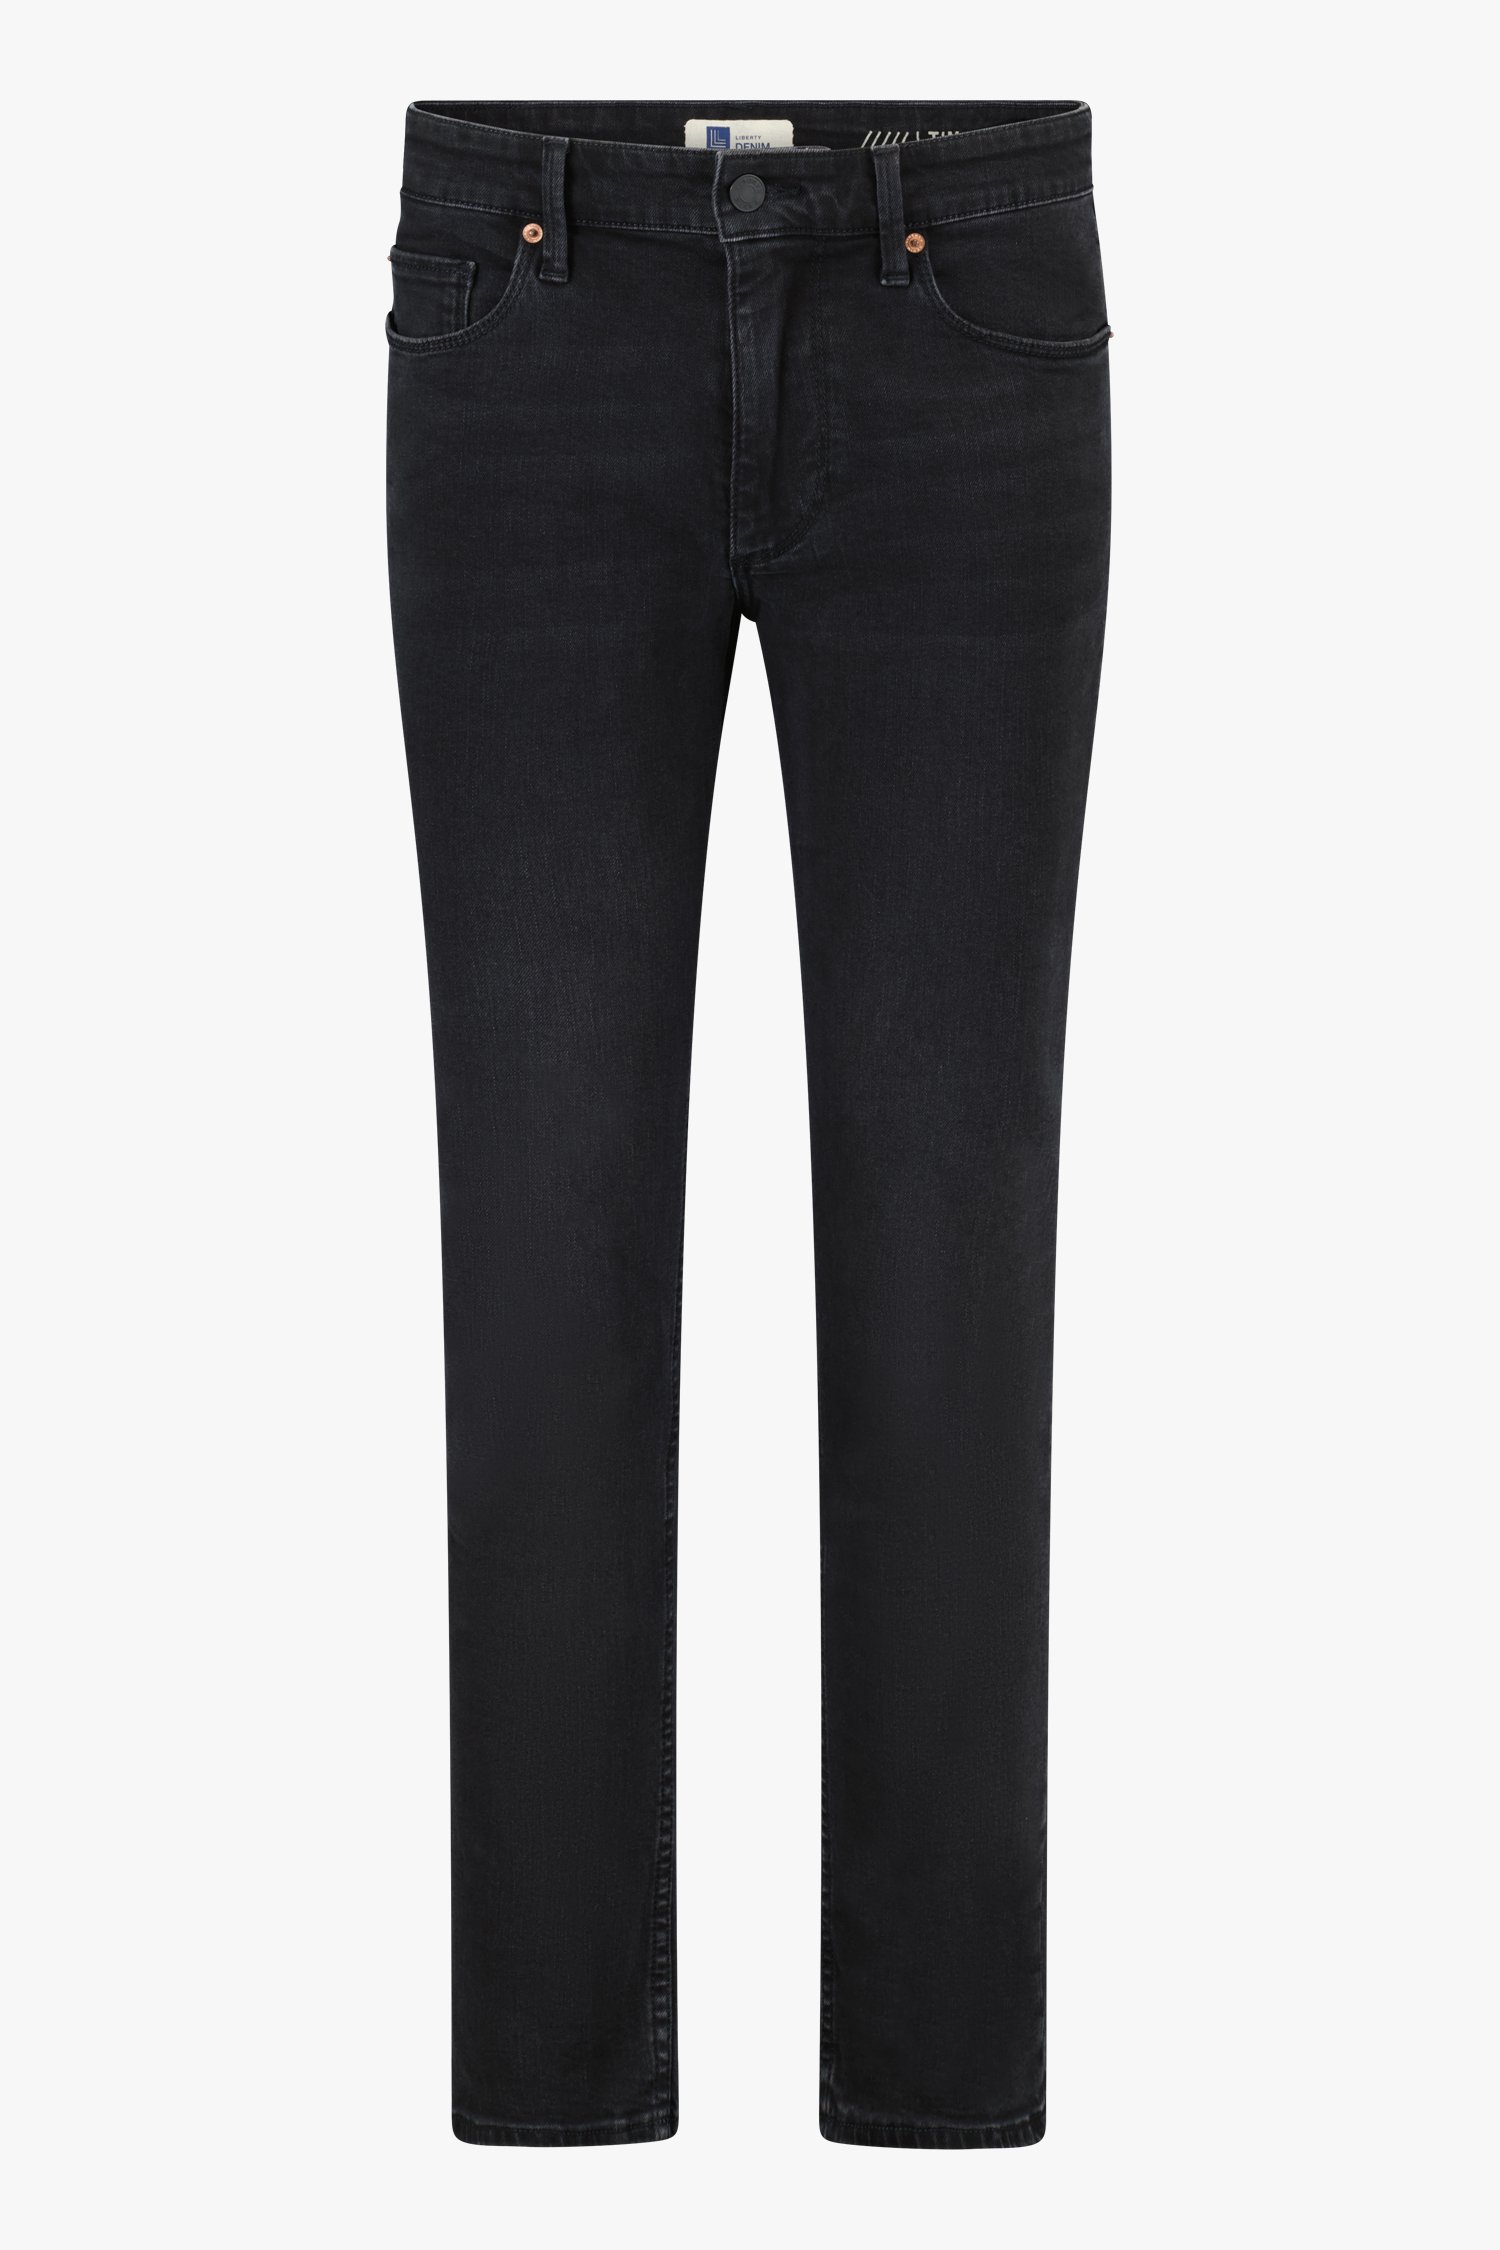 Zwarte jeans - Tim - slim fit - L32 van Liberty Island Denim voor Heren